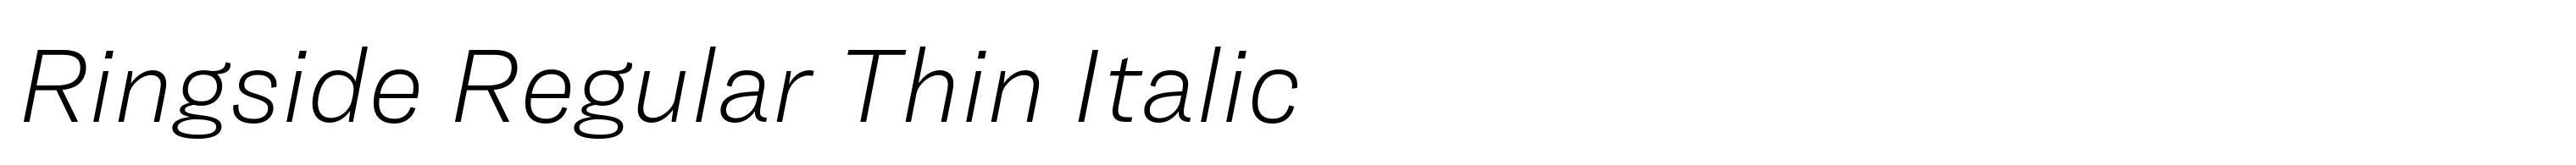 Ringside Regular Thin Italic